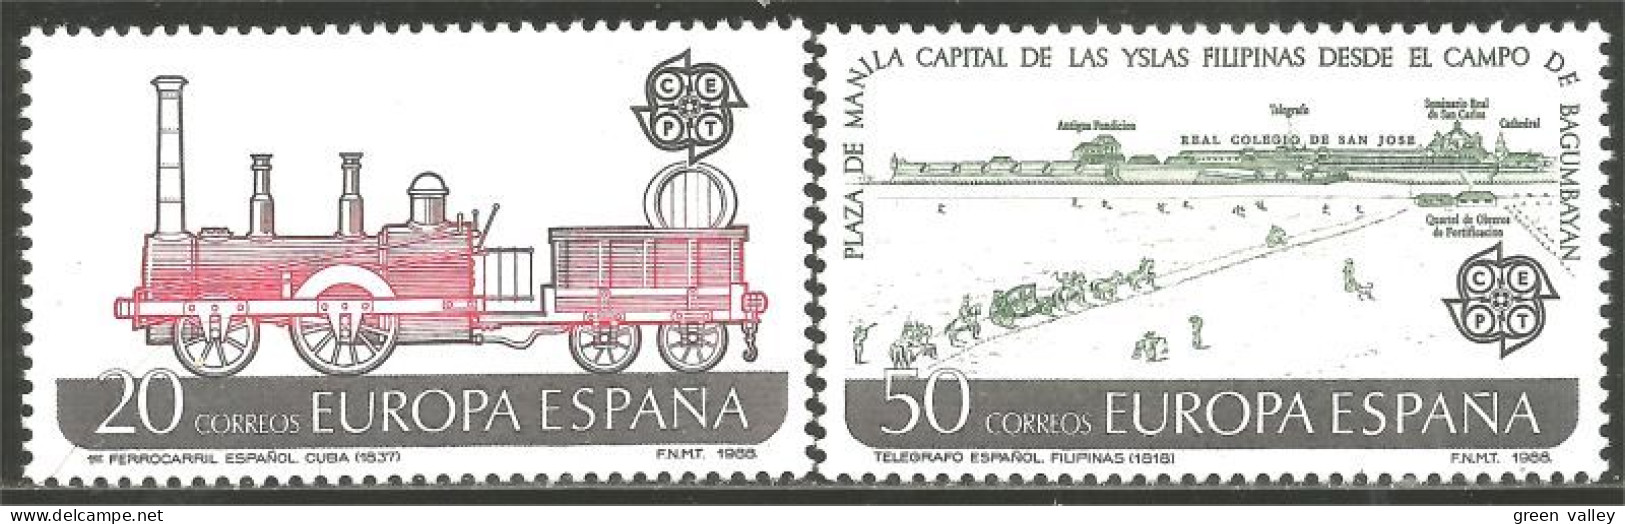 EU88-12a EUROPA-CEPT 1988 Spain Diligence Cheval Horse Pferd Cavallo Caballo MNH ** Neuf SC - Caballos